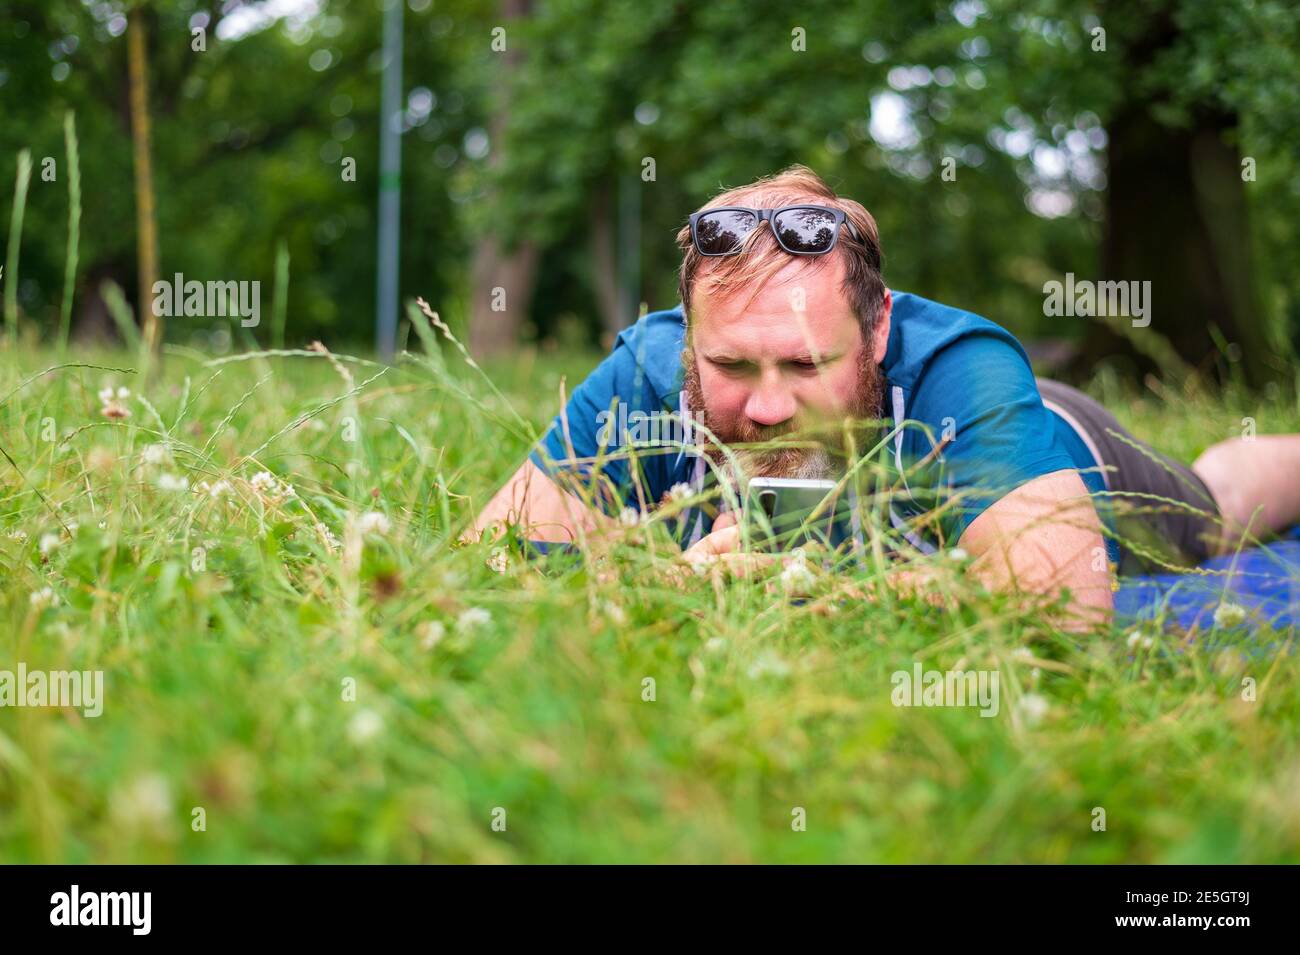 Erwachsener Mann hält Smartphone, während auf grünem Gras in liegen Stadtpark Stockfoto